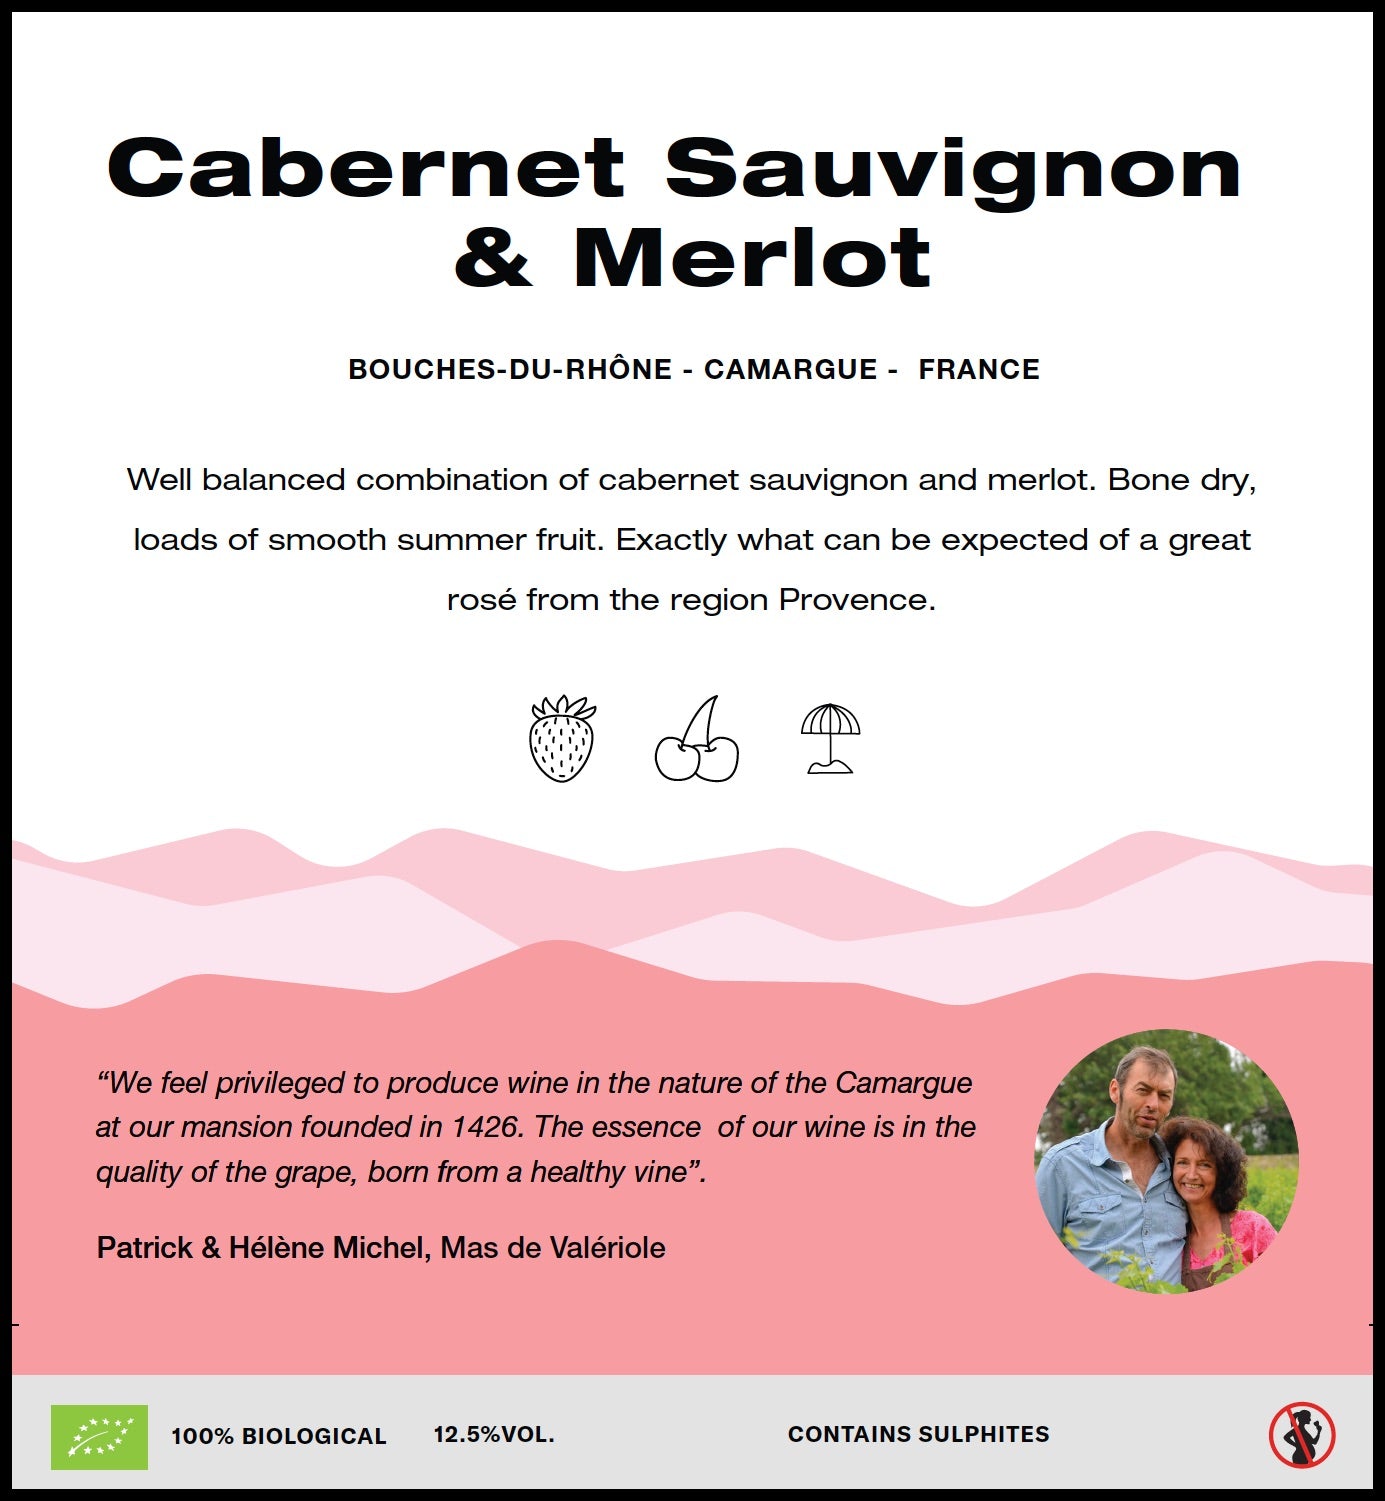 Cabernet sauvignon & Merlot (rosé) (Camargue)